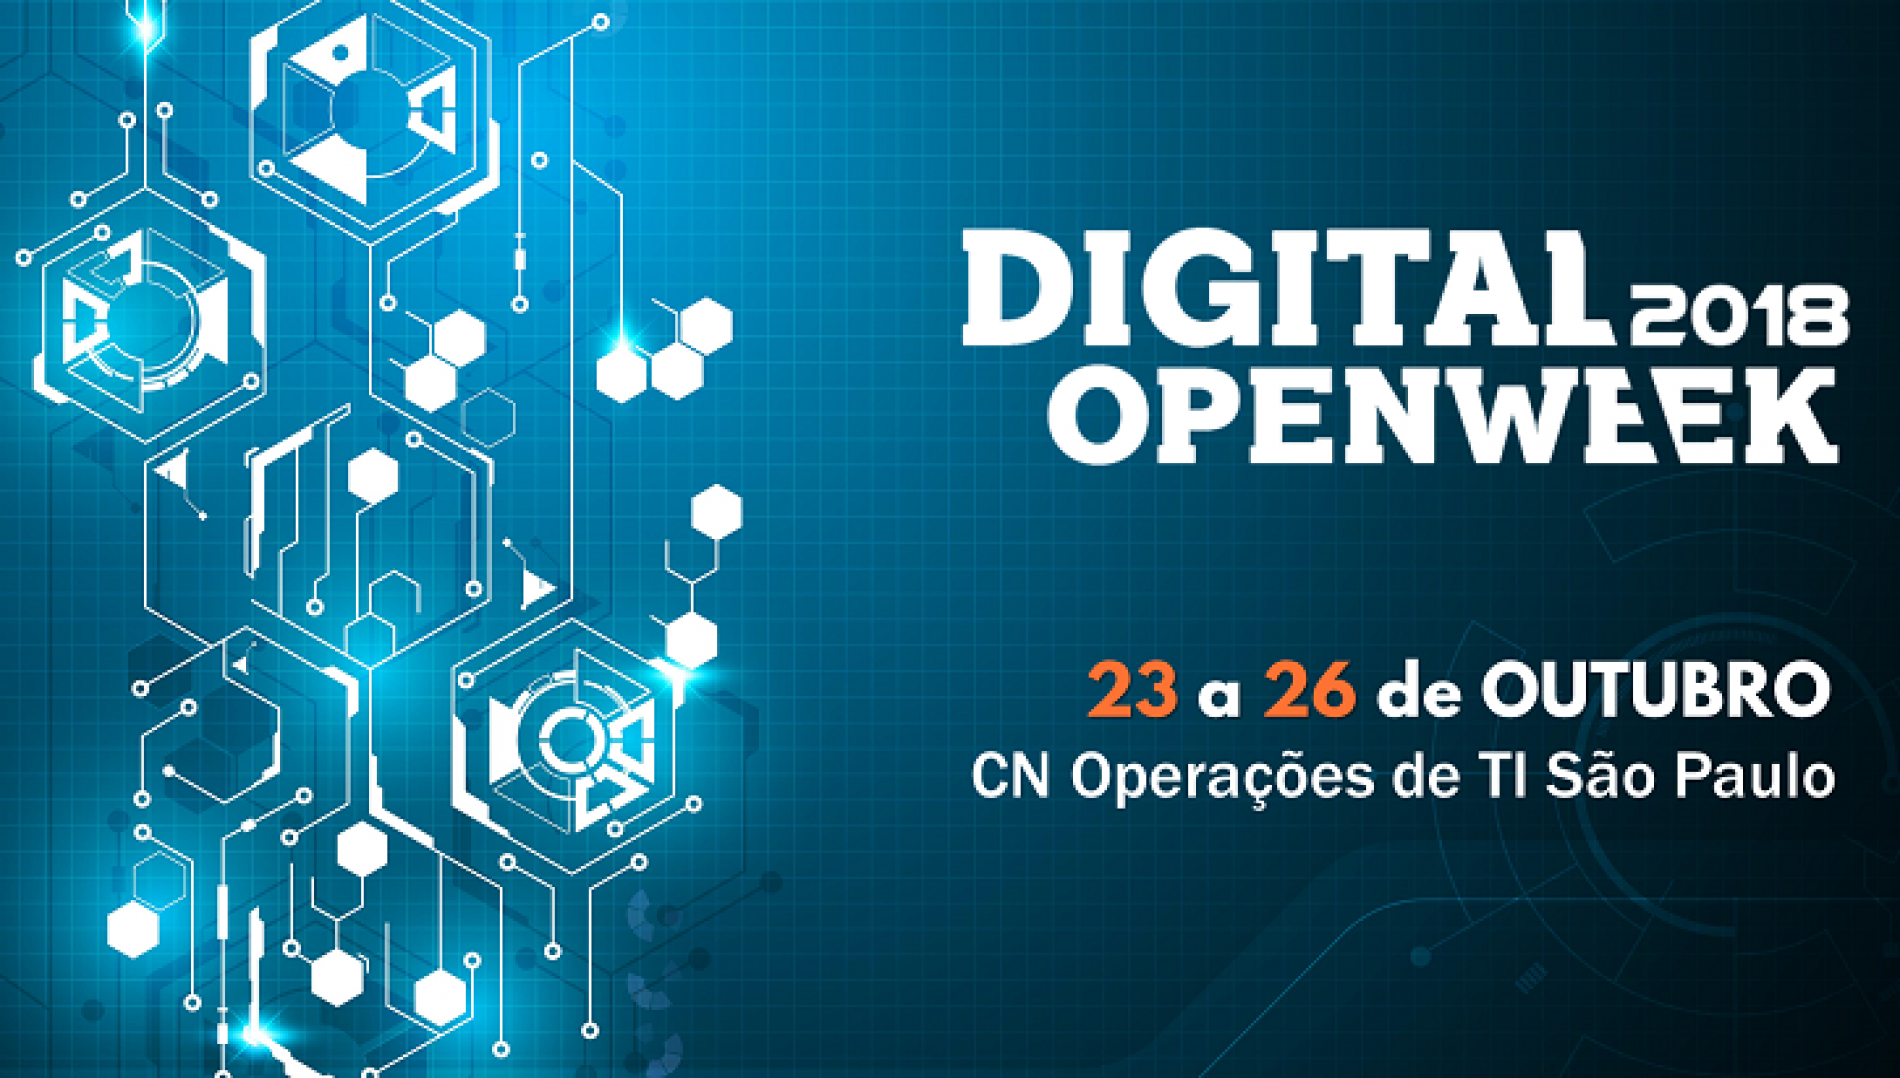 4Linux participará de evento de tecnologia organizado pela Caixa Econômica Federal